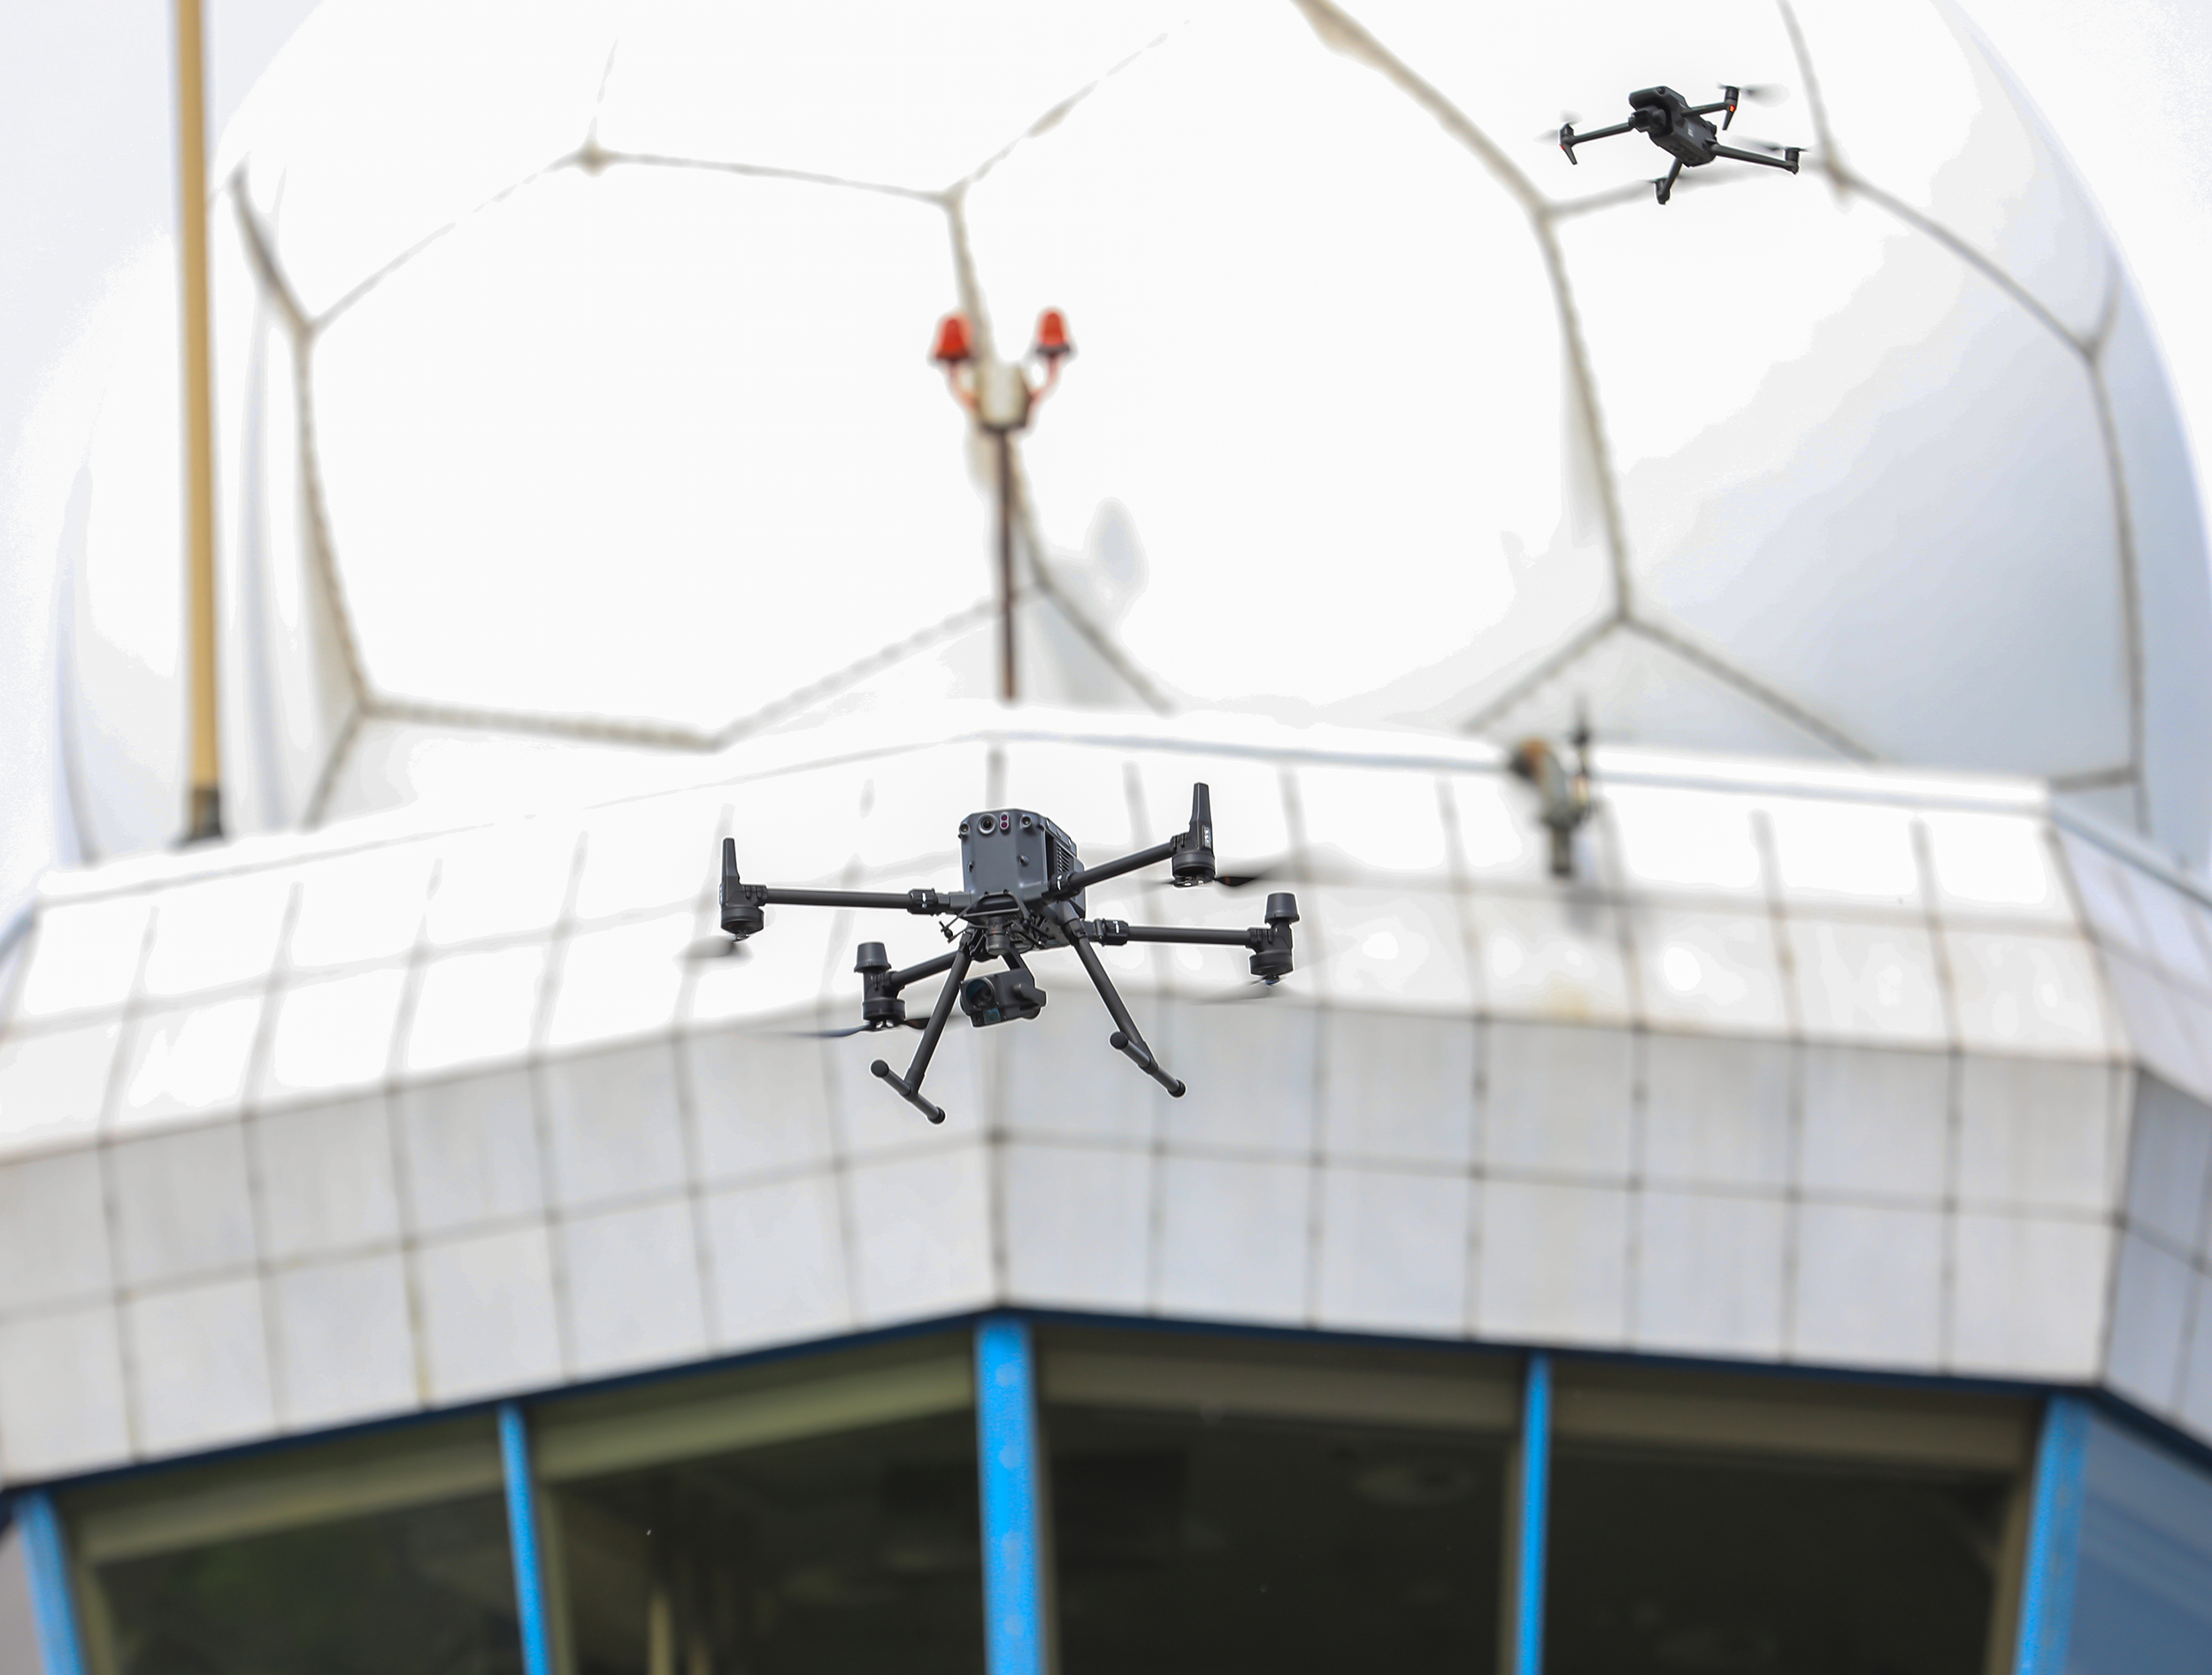 nowa aplikacja dronetower już działa. posiadacze dronów muszą ją pobrać